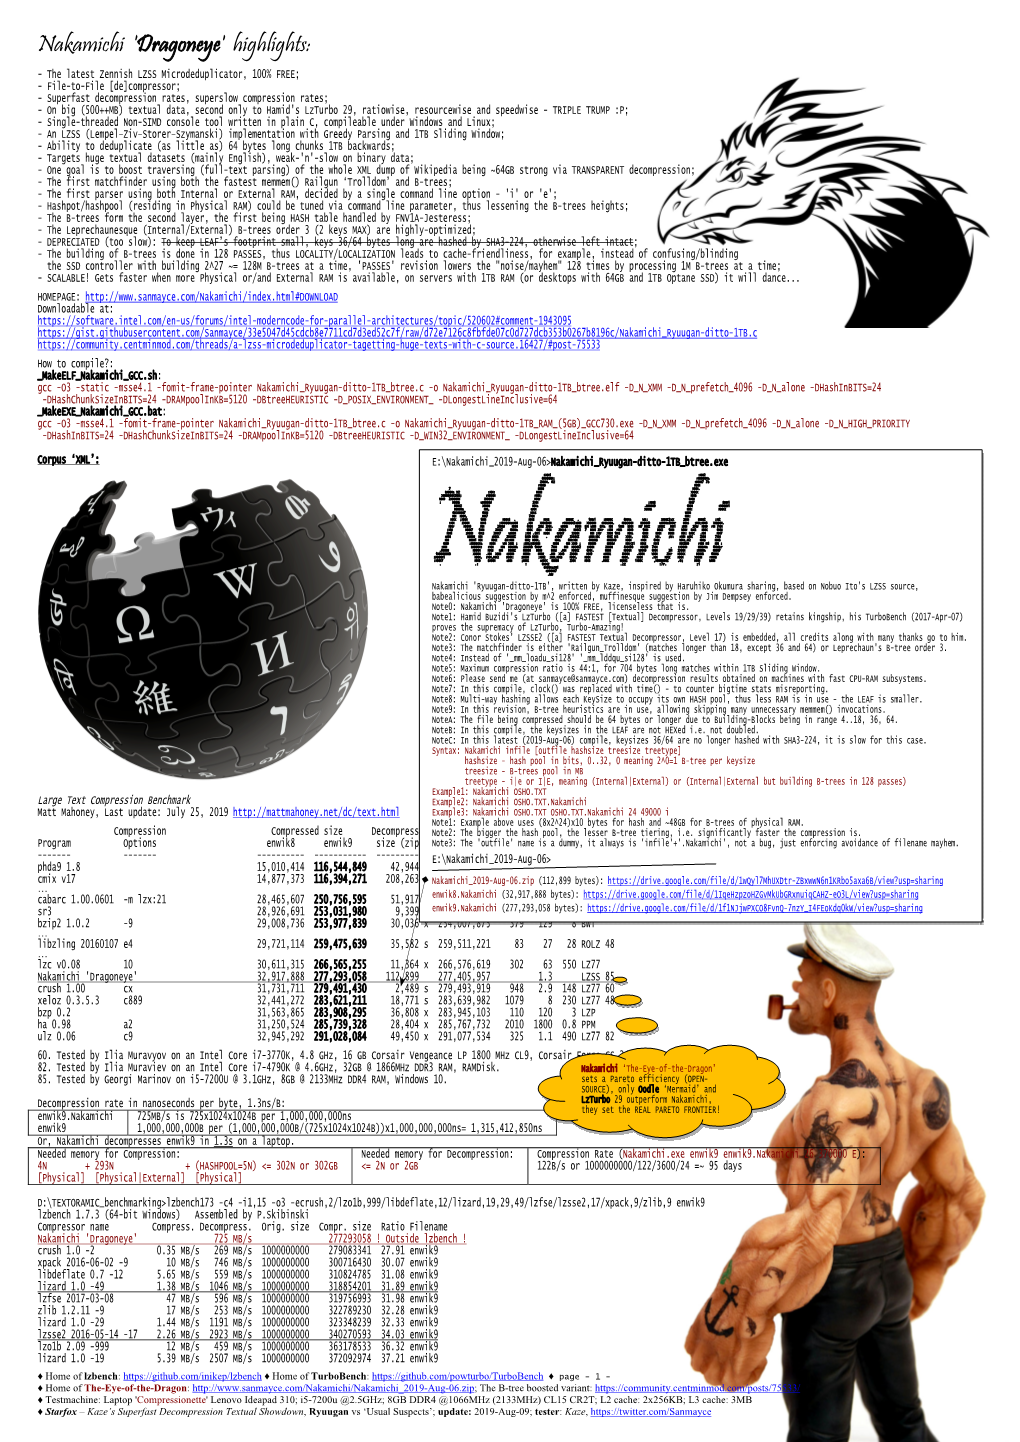 Nakamichi 'Dragoneye' Highlights